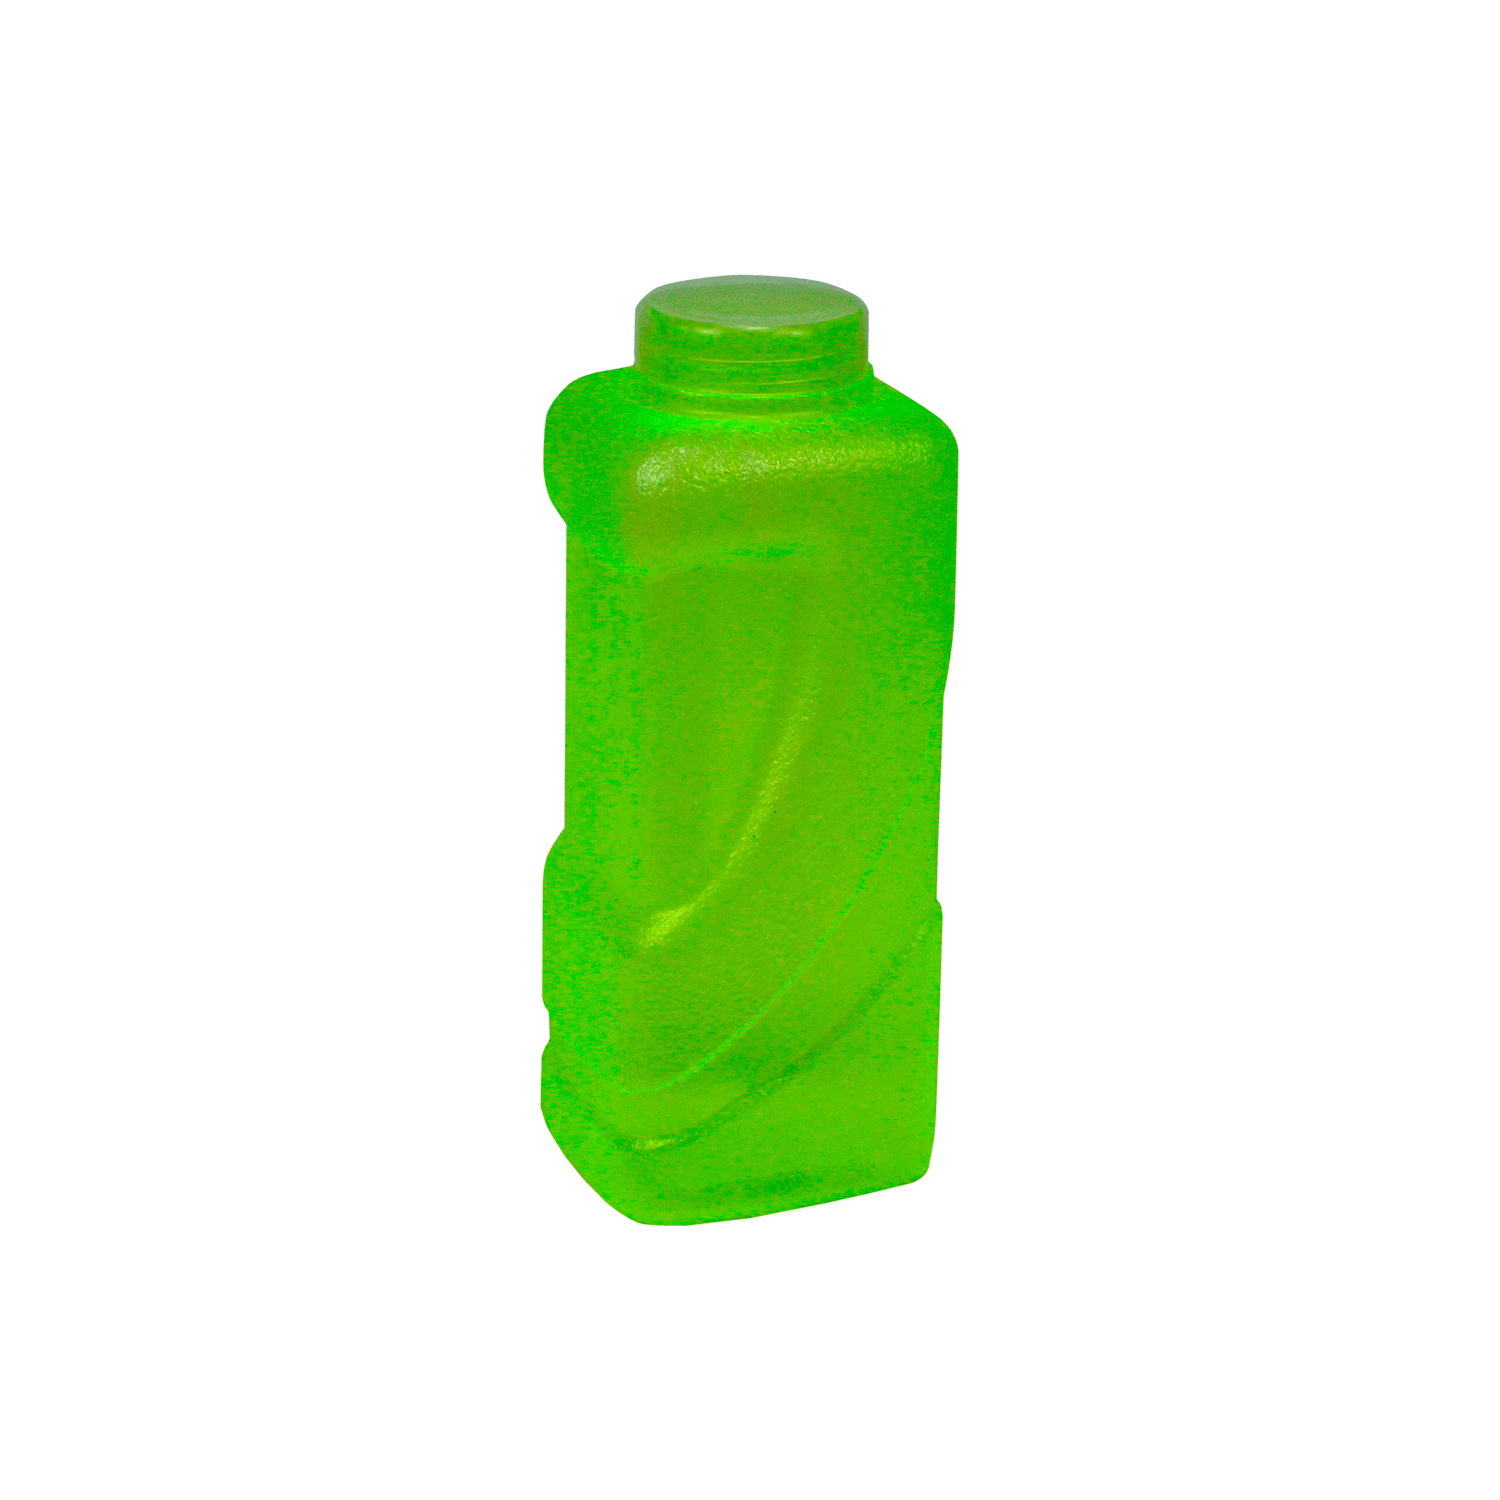 Garrafa Pratic Water Amarelo Fluorescente 1200ml Consplast (1)